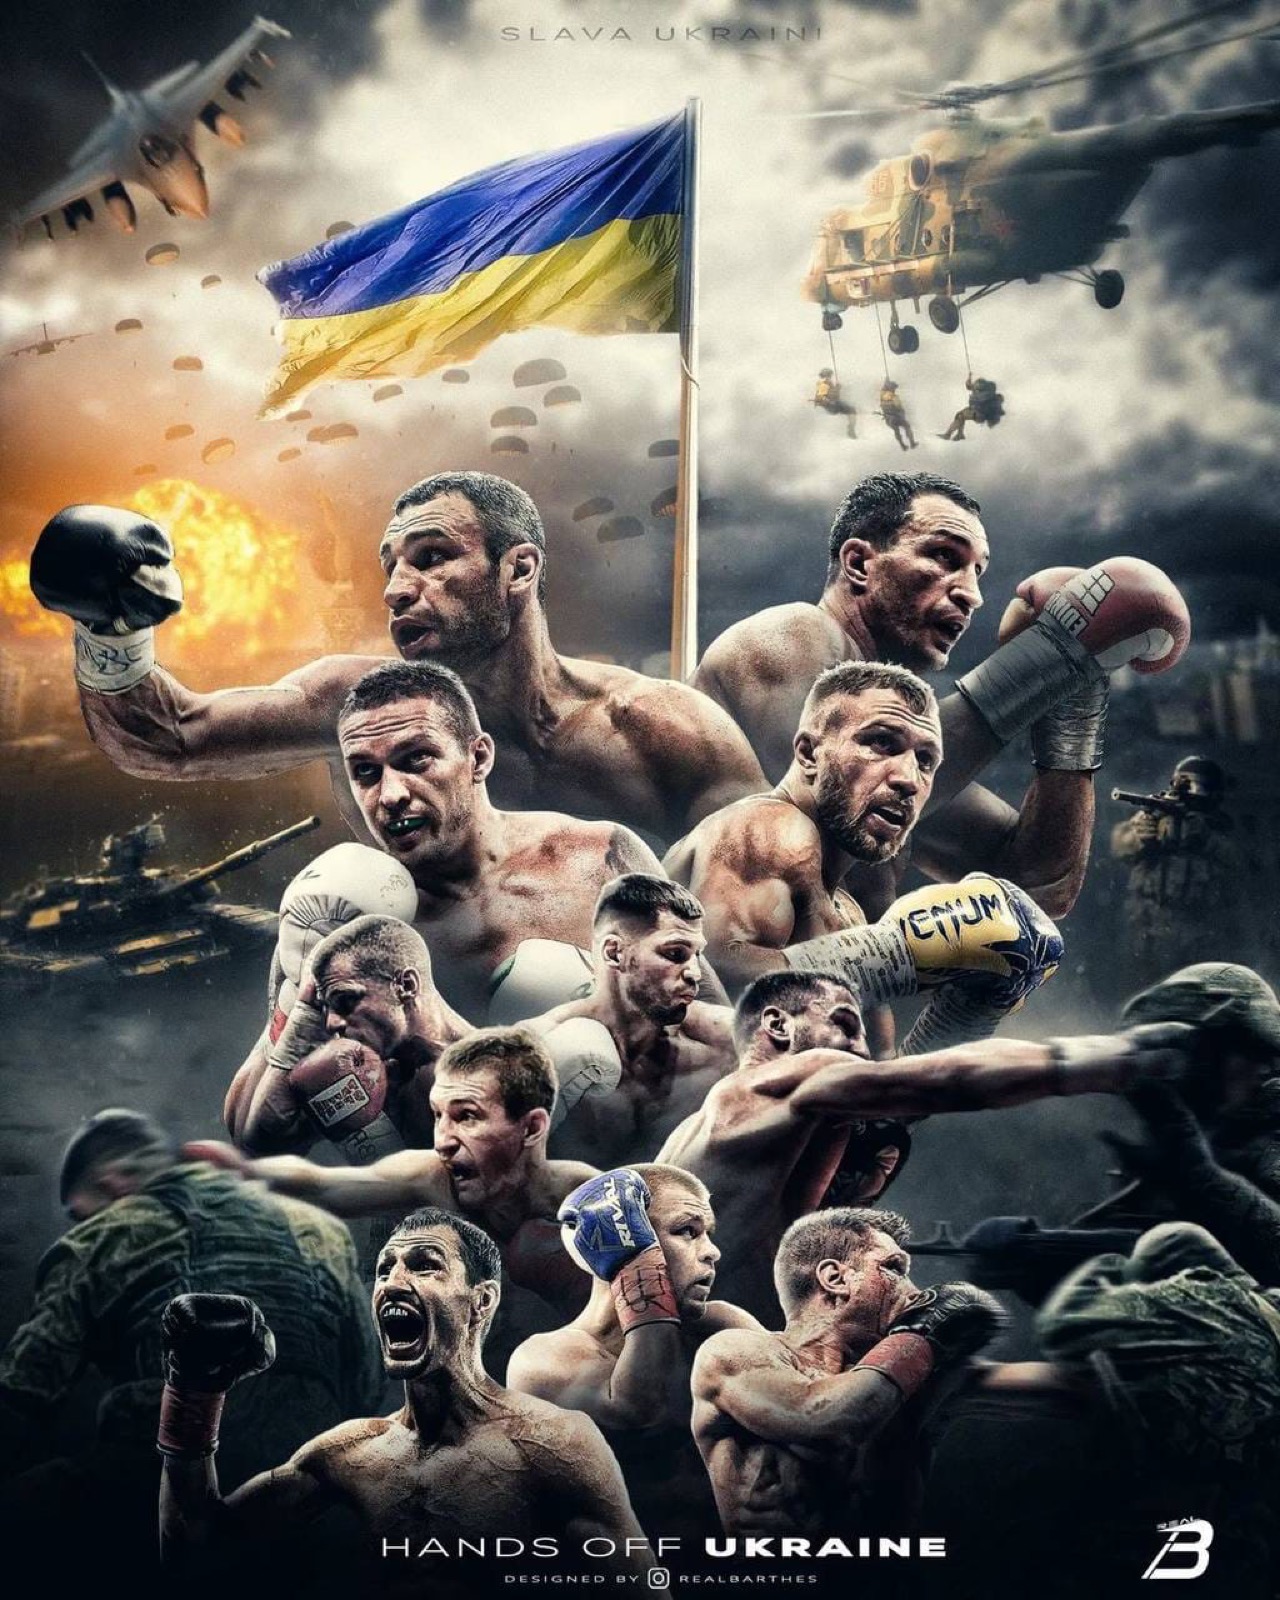 Alexander Usyk, Tyson Fury, Vasiliy Lomachenko, Vitali Klitschko, Wladimir Klitschko boxing image / photo